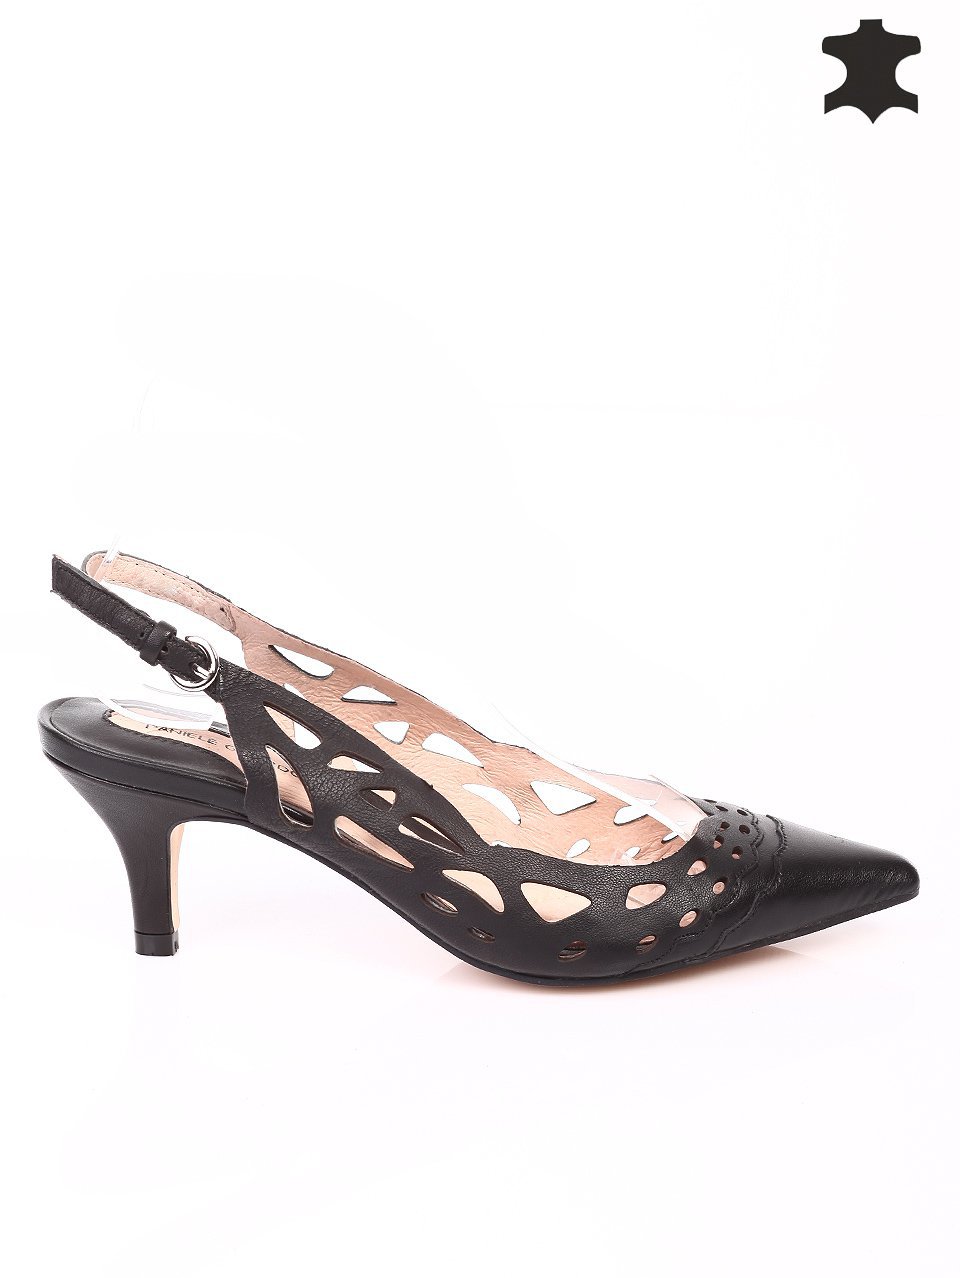 Елегантни дамски сандали на ток от естествена кожа 4I-16243 black